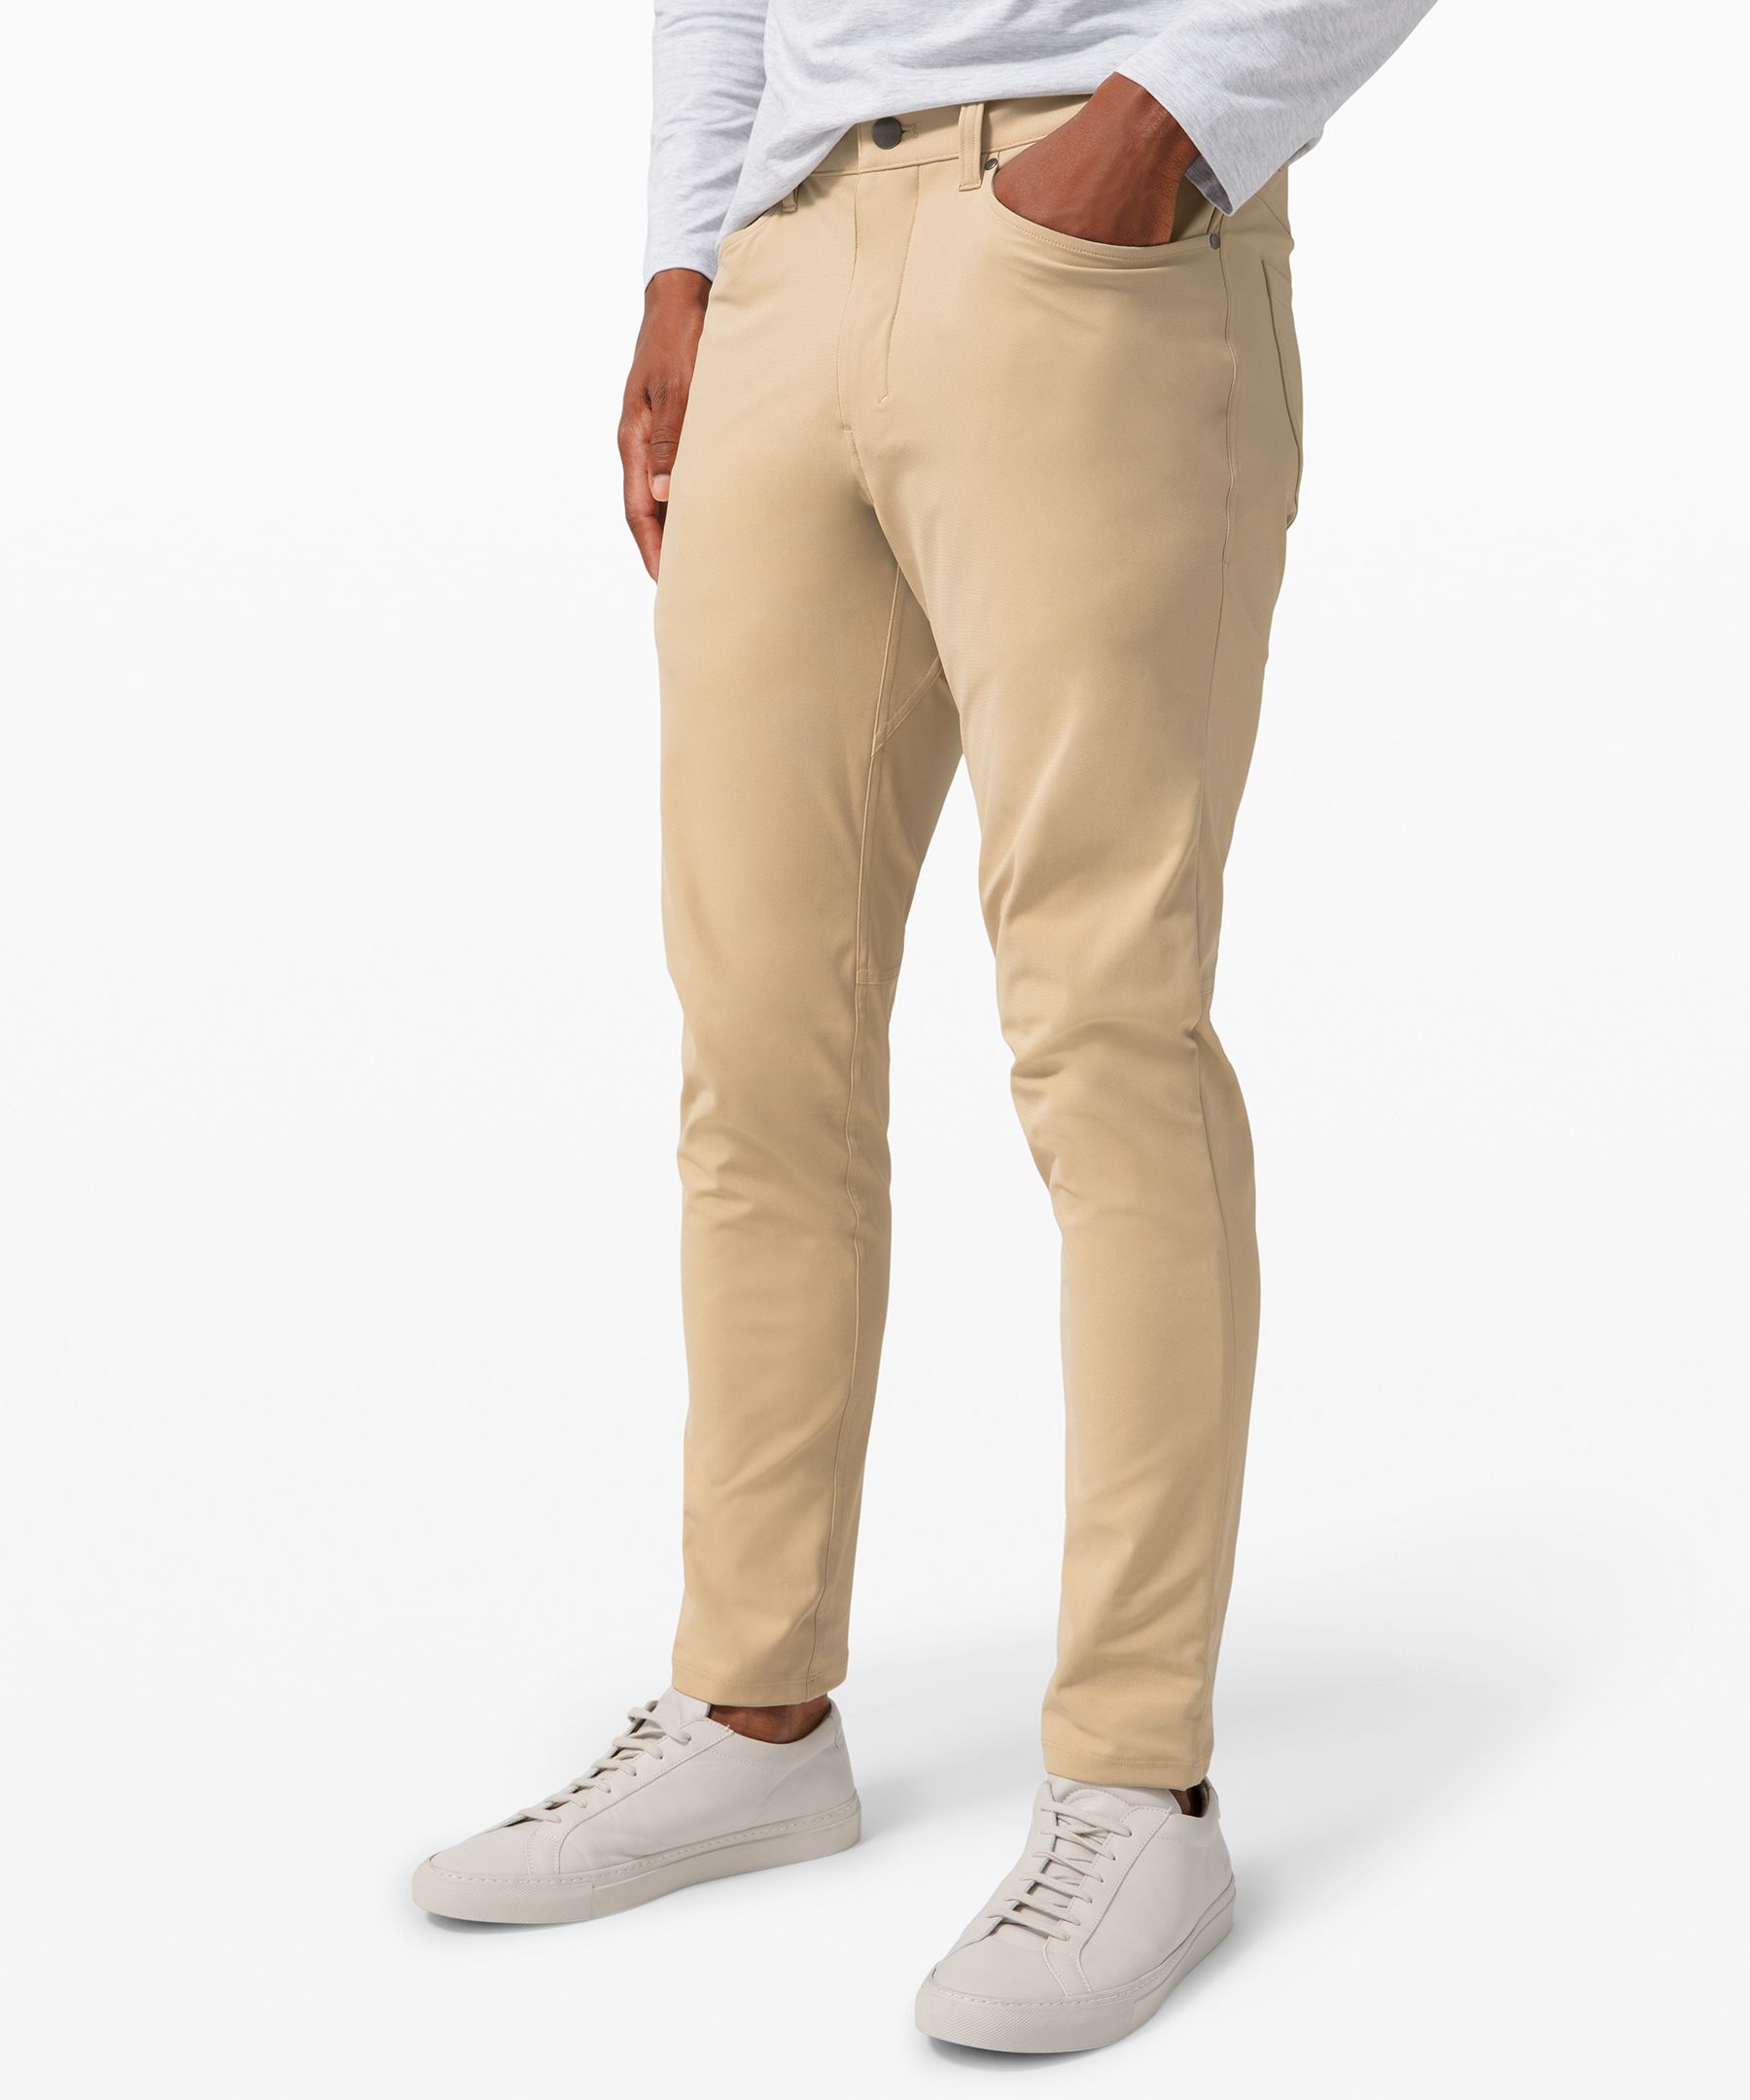 Lululemon athletica ABC Slim-Fit 5 Pocket Pant 37L *Warpstreme, Men's  Trousers